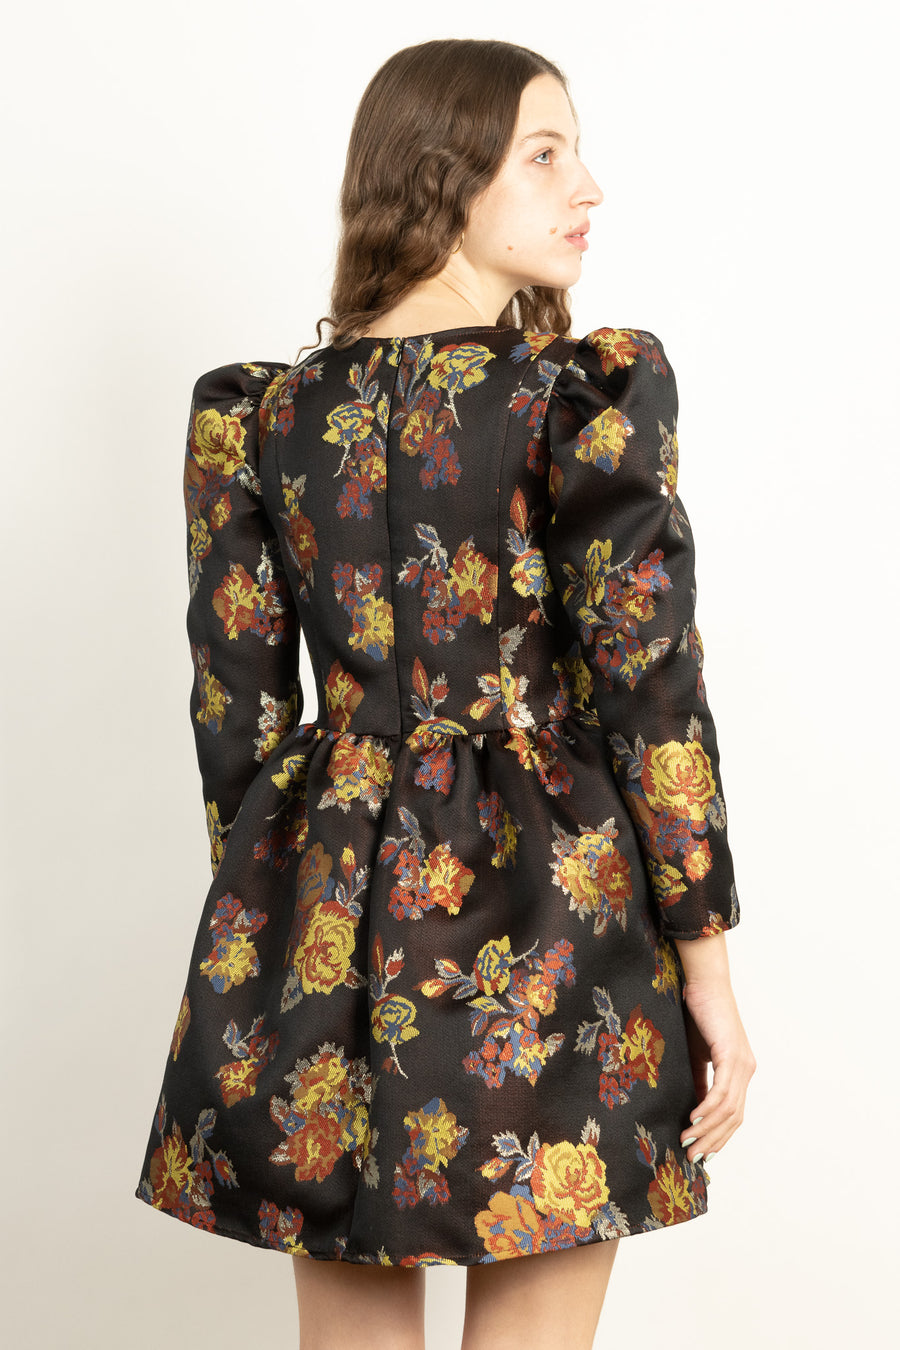 BATSHEVA - Square Neck Mini Prairie Dress in Black Floral Jacquard